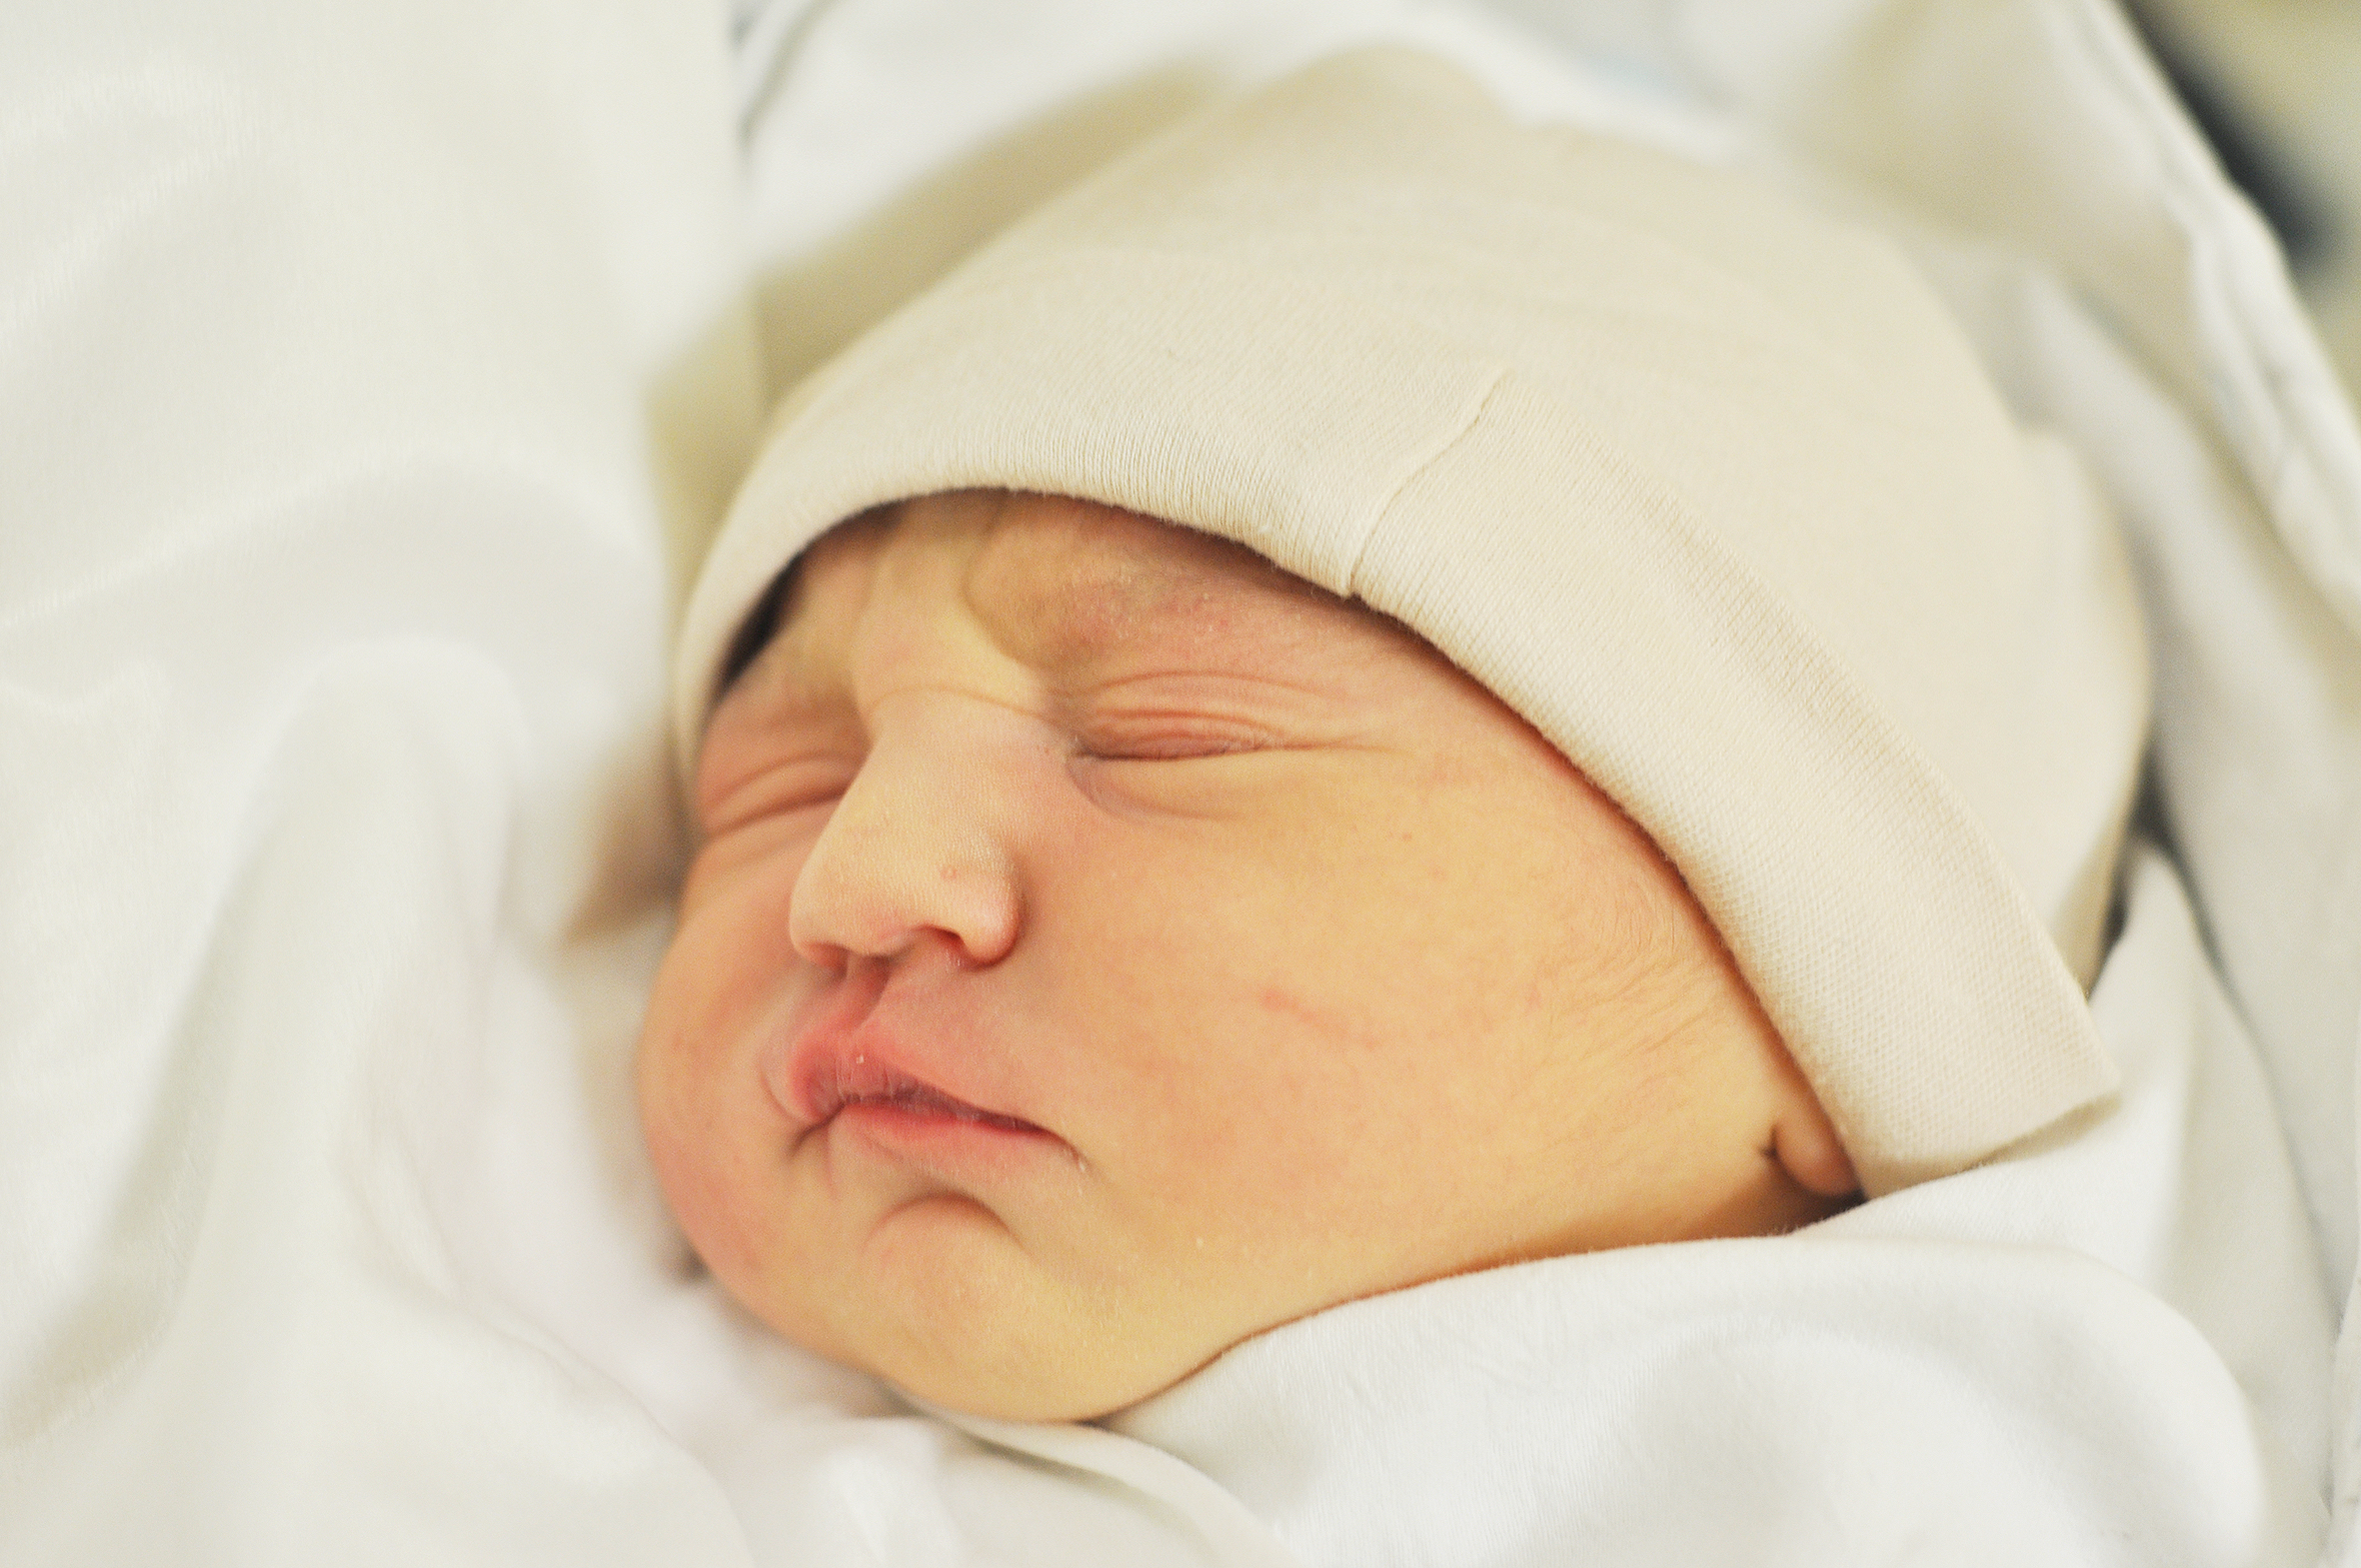 Michalina Keler jest nową raciborzanką. Pierwsze dziecko Katarzyny i Wojciecha urodziło się 26 grudnia o 23.37. Na początek ważyło 3470 g i mierzyło 54 cm.